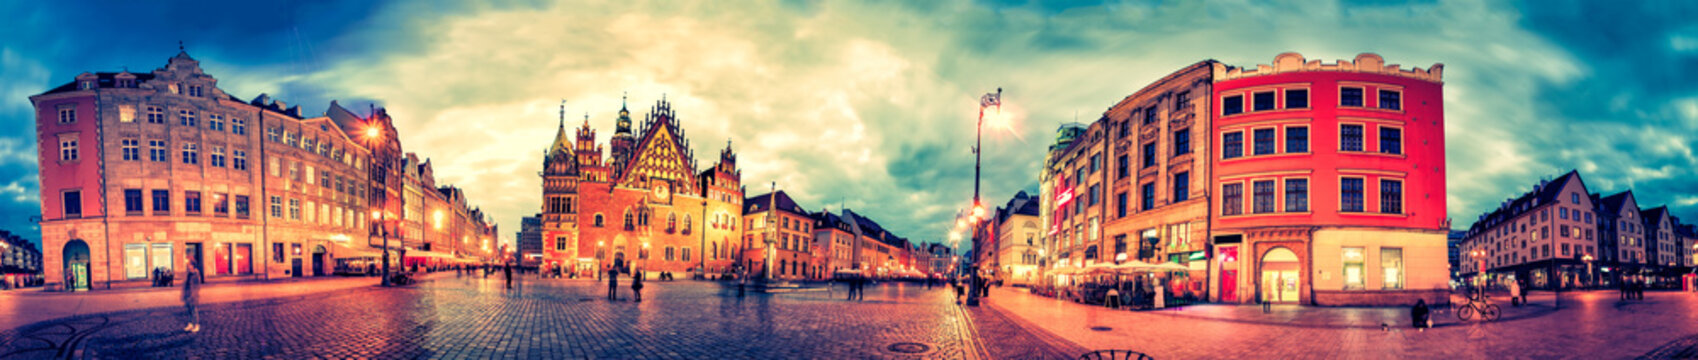 Fototapeta Wrocławski rynek z urzędem miasta podczas zmierzchu wieczór, Polska, Europa. Panoramiczny montaż z 27 zdjęć HDR z efektami przetwarzania końcowego